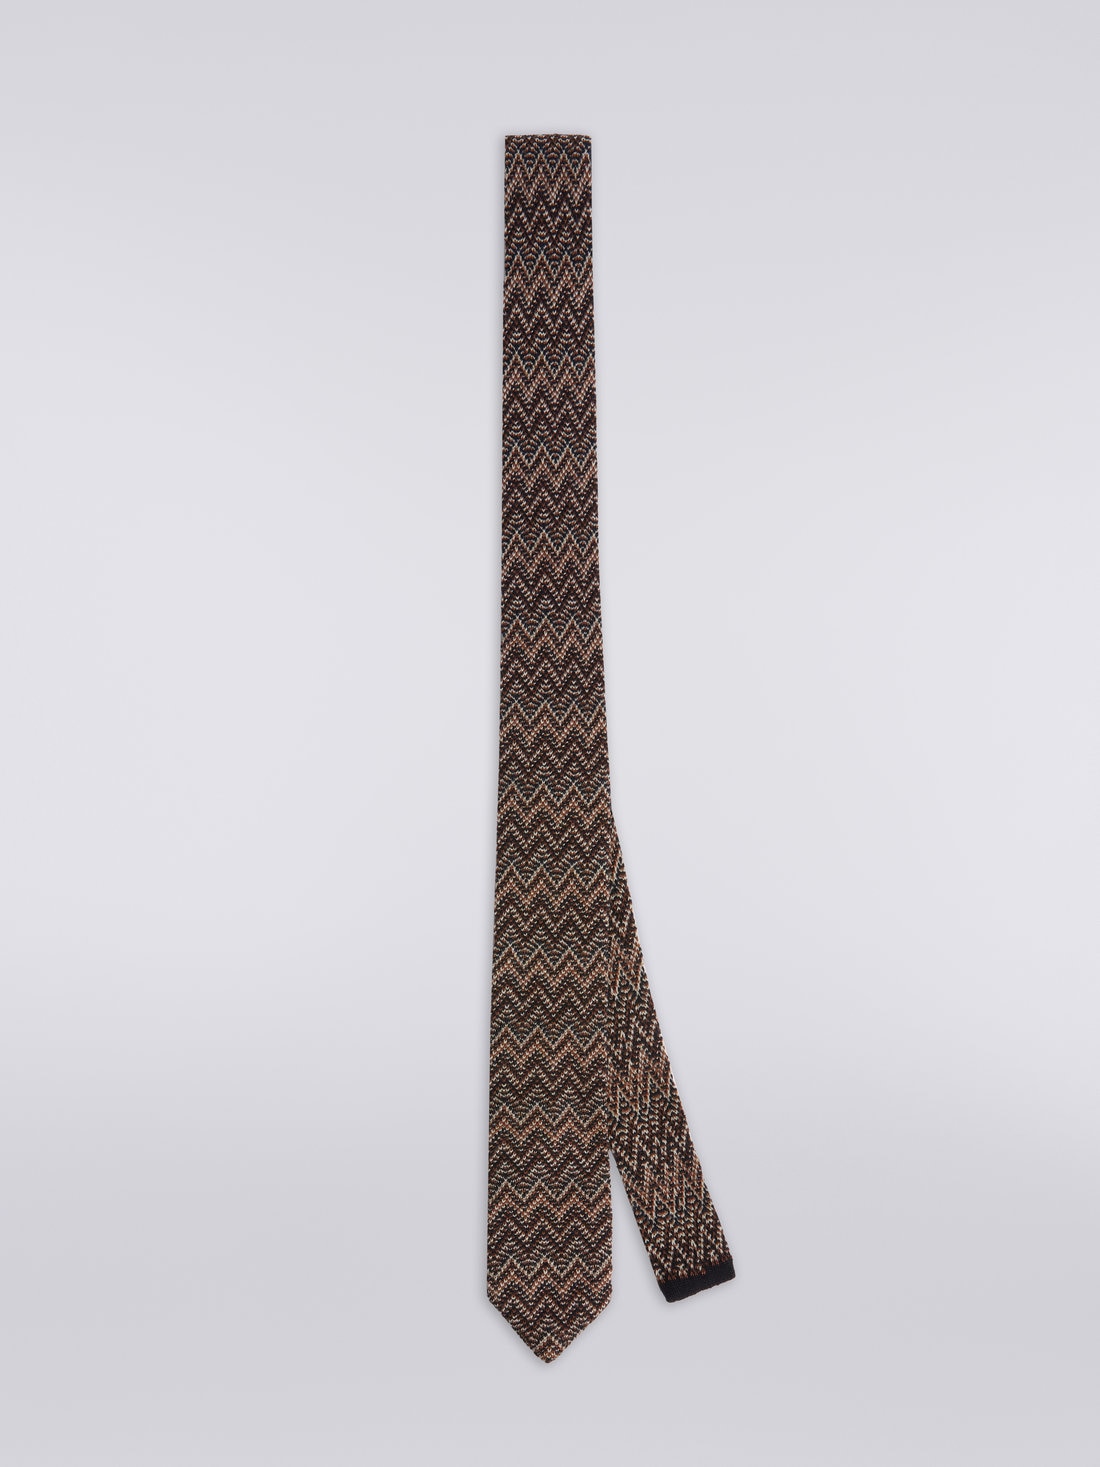 Krawatte aus Wolle und Seide mit Chevronmuster , Mehrfarbig  - 8053147023434 - 0